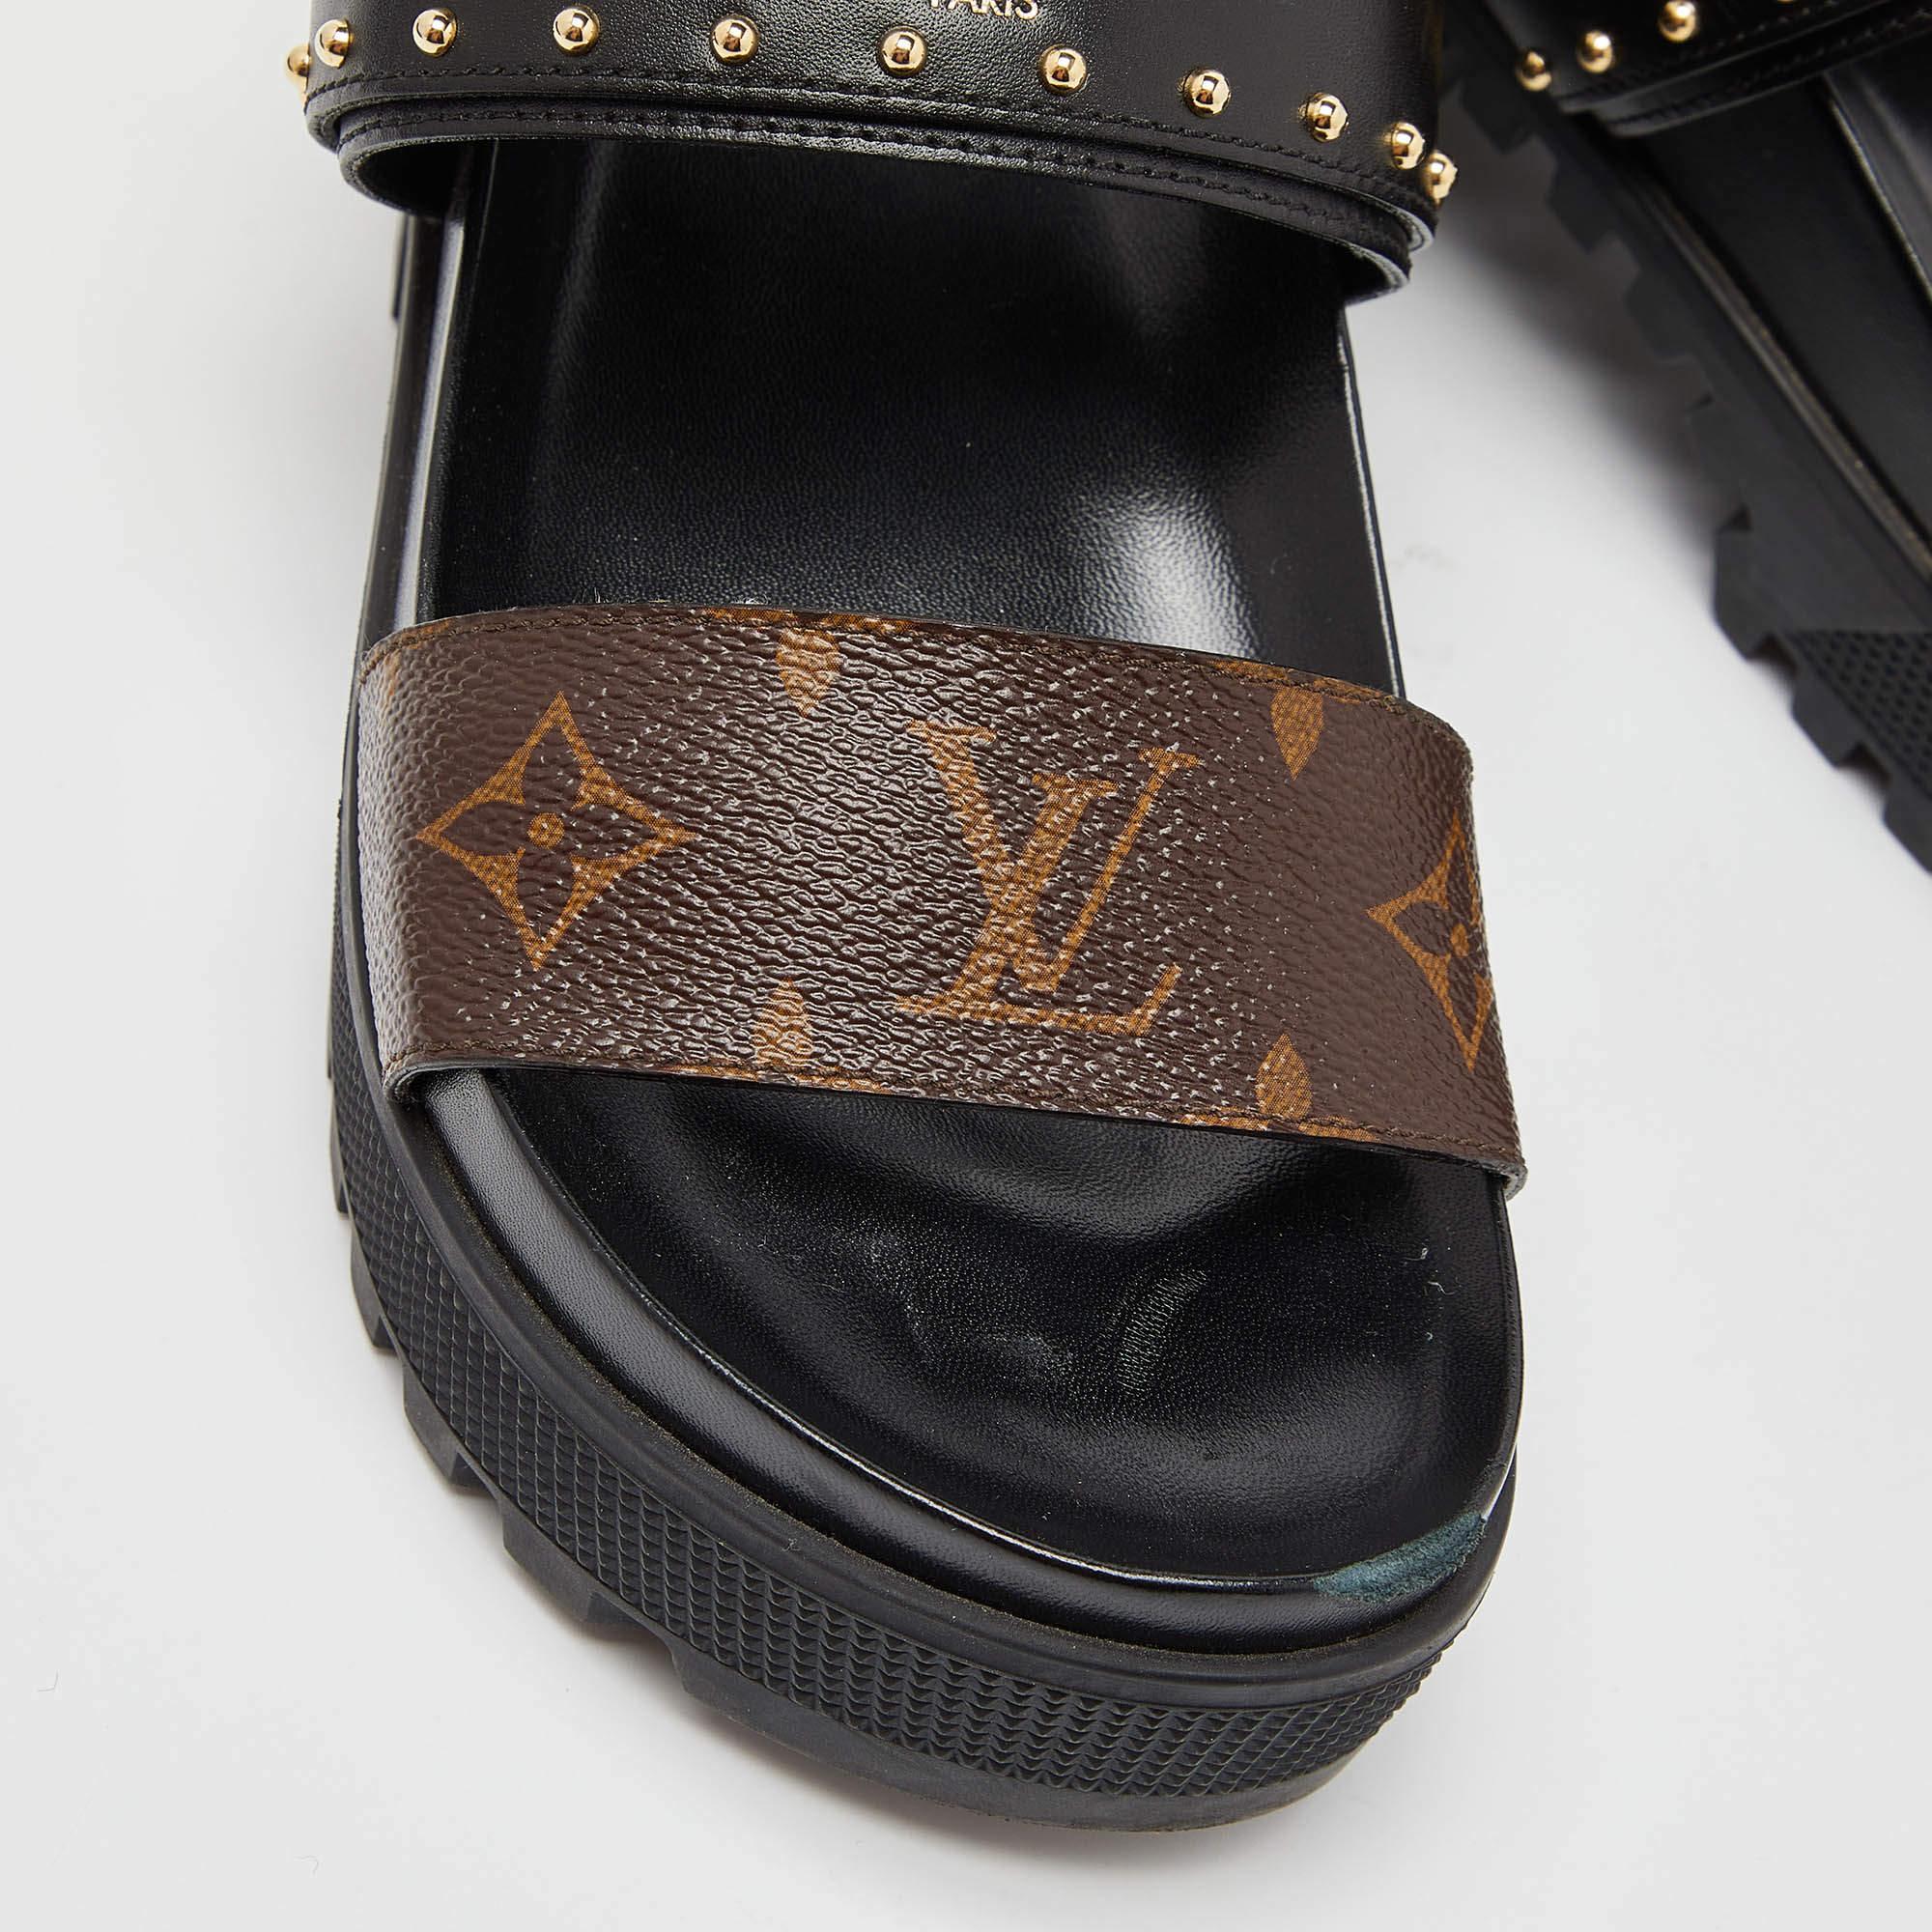 Louis Vuitton Monogram Canvas and Leather Laureate Platform Sandals Size 36.5 1